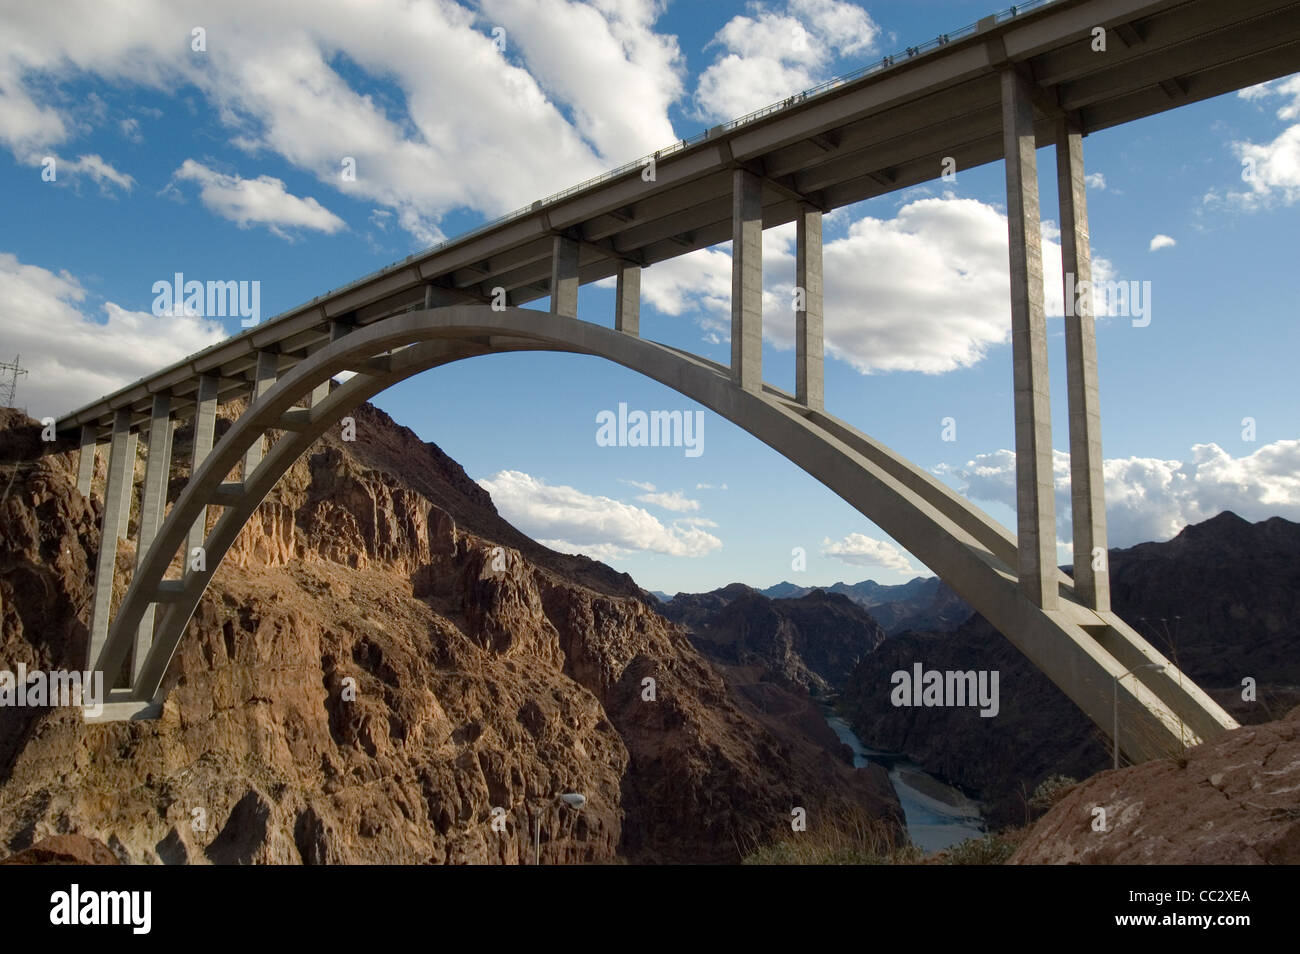 Hoover Damn ponte del Nevada negli Stati Uniti. Un ottimo esempio di ponte di ingegneria e architettura. Adottate il 8 novembre 2010. Foto Stock